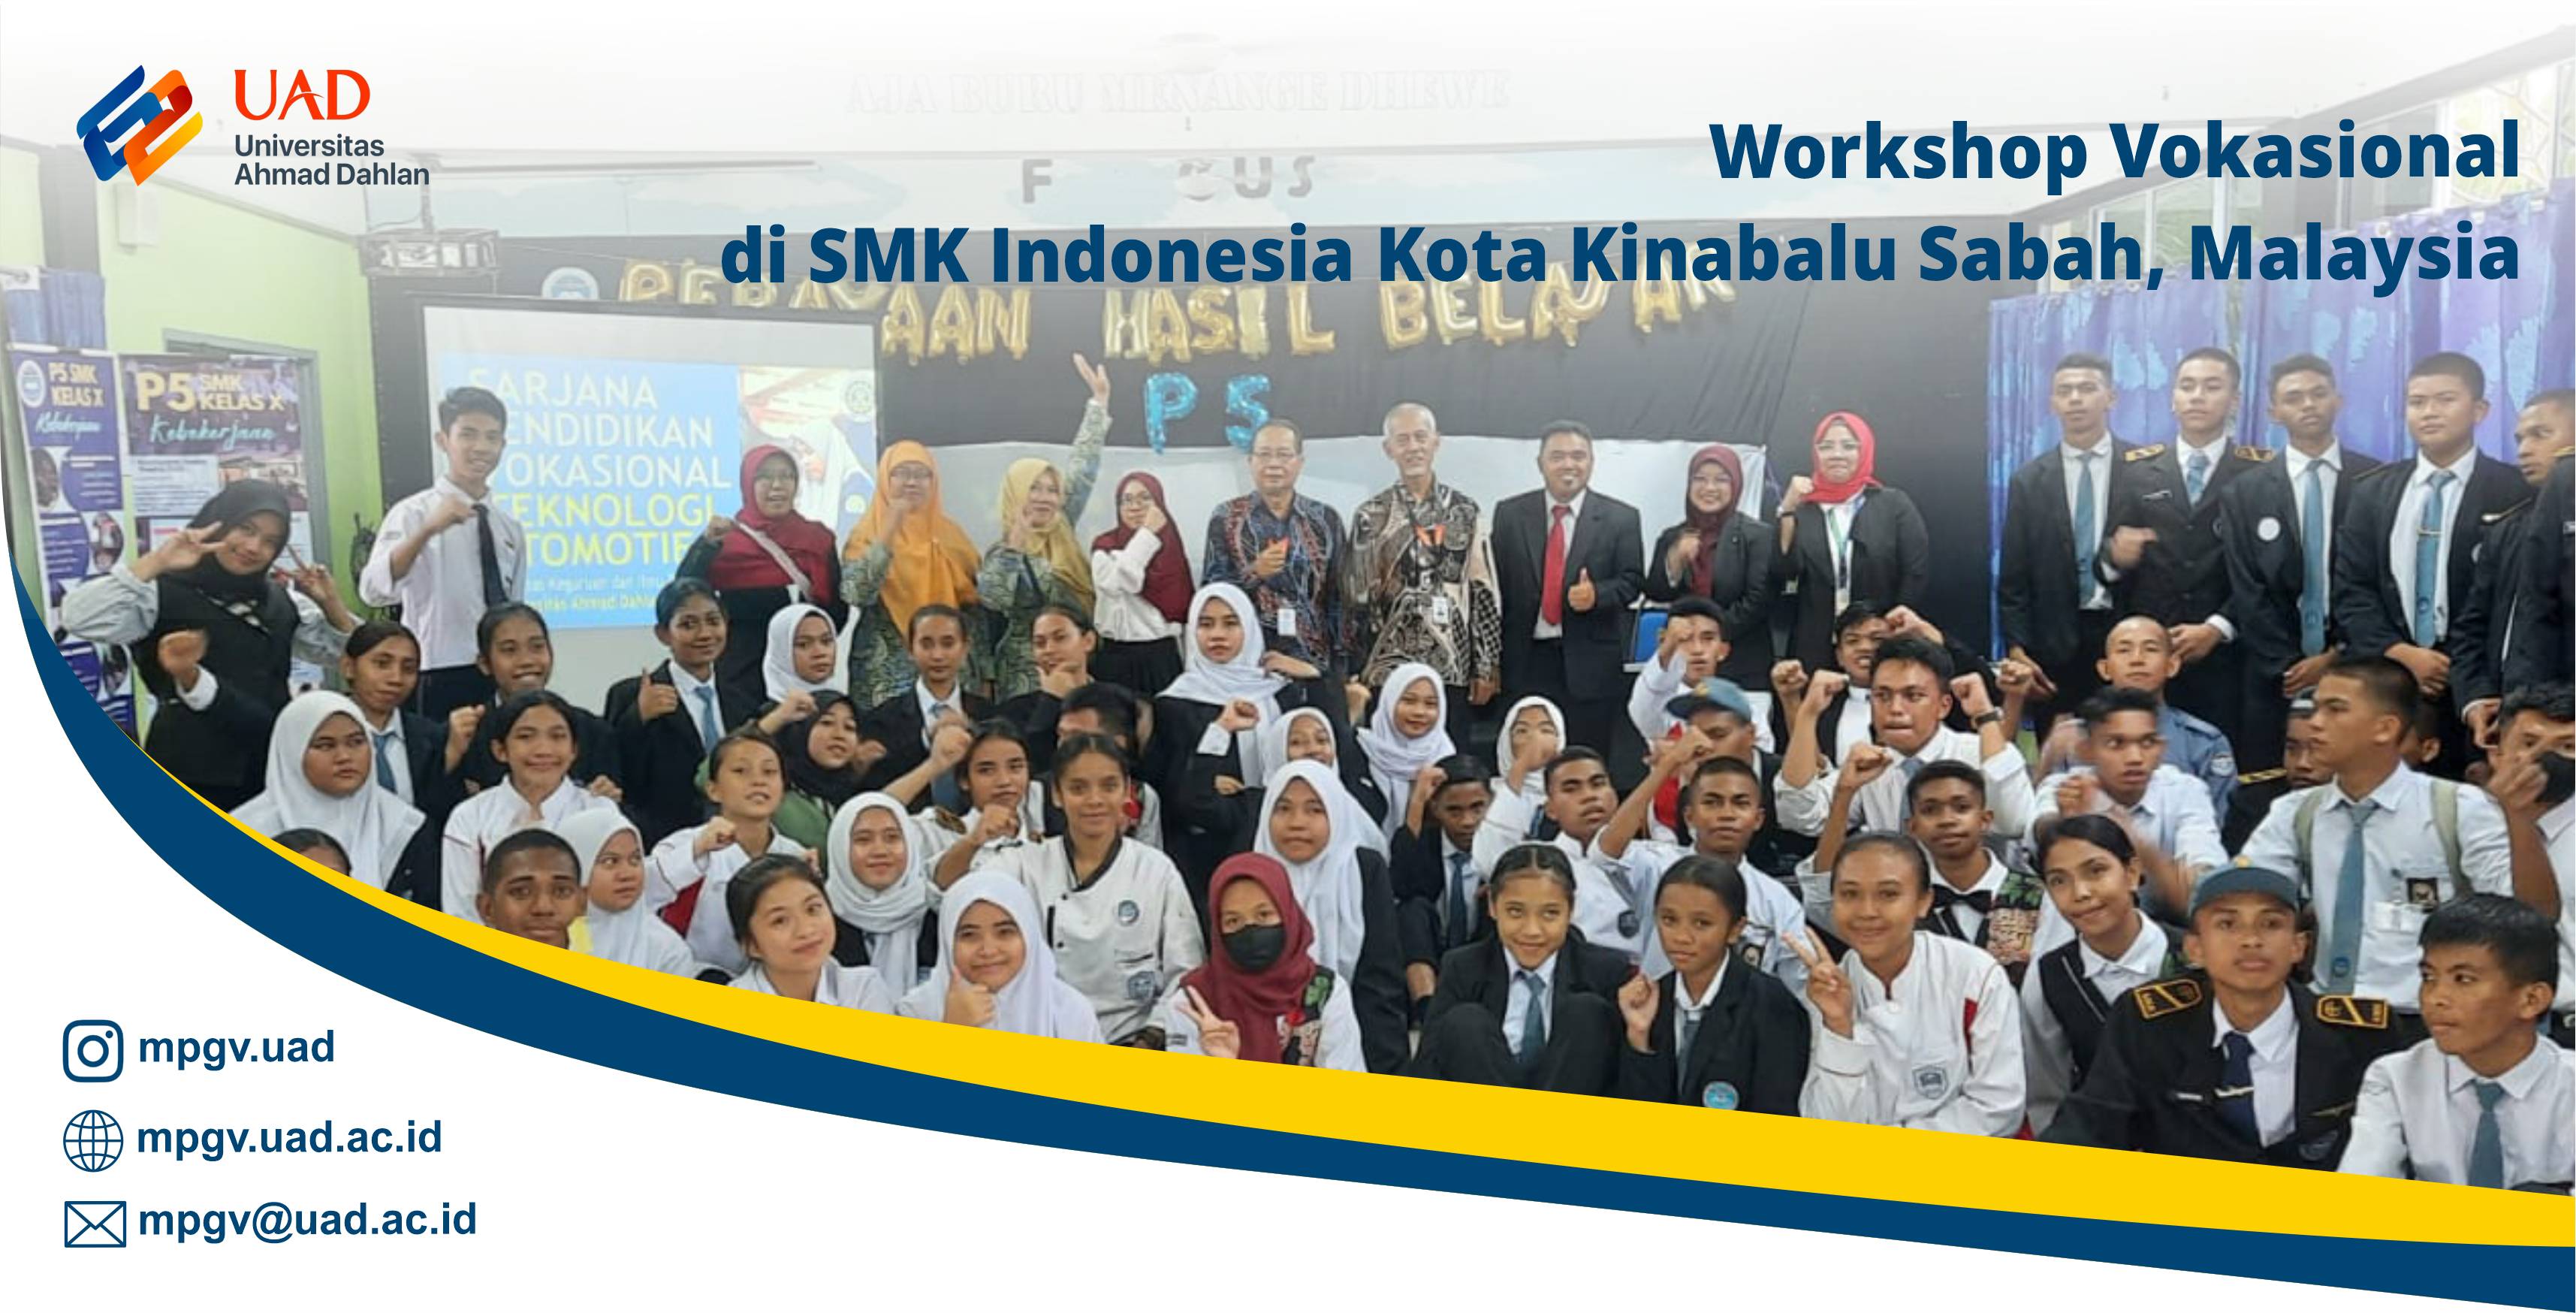 Pelatihan Vokasional di SMK Indonesia Kota Kinabalu Sabah, Malaysia